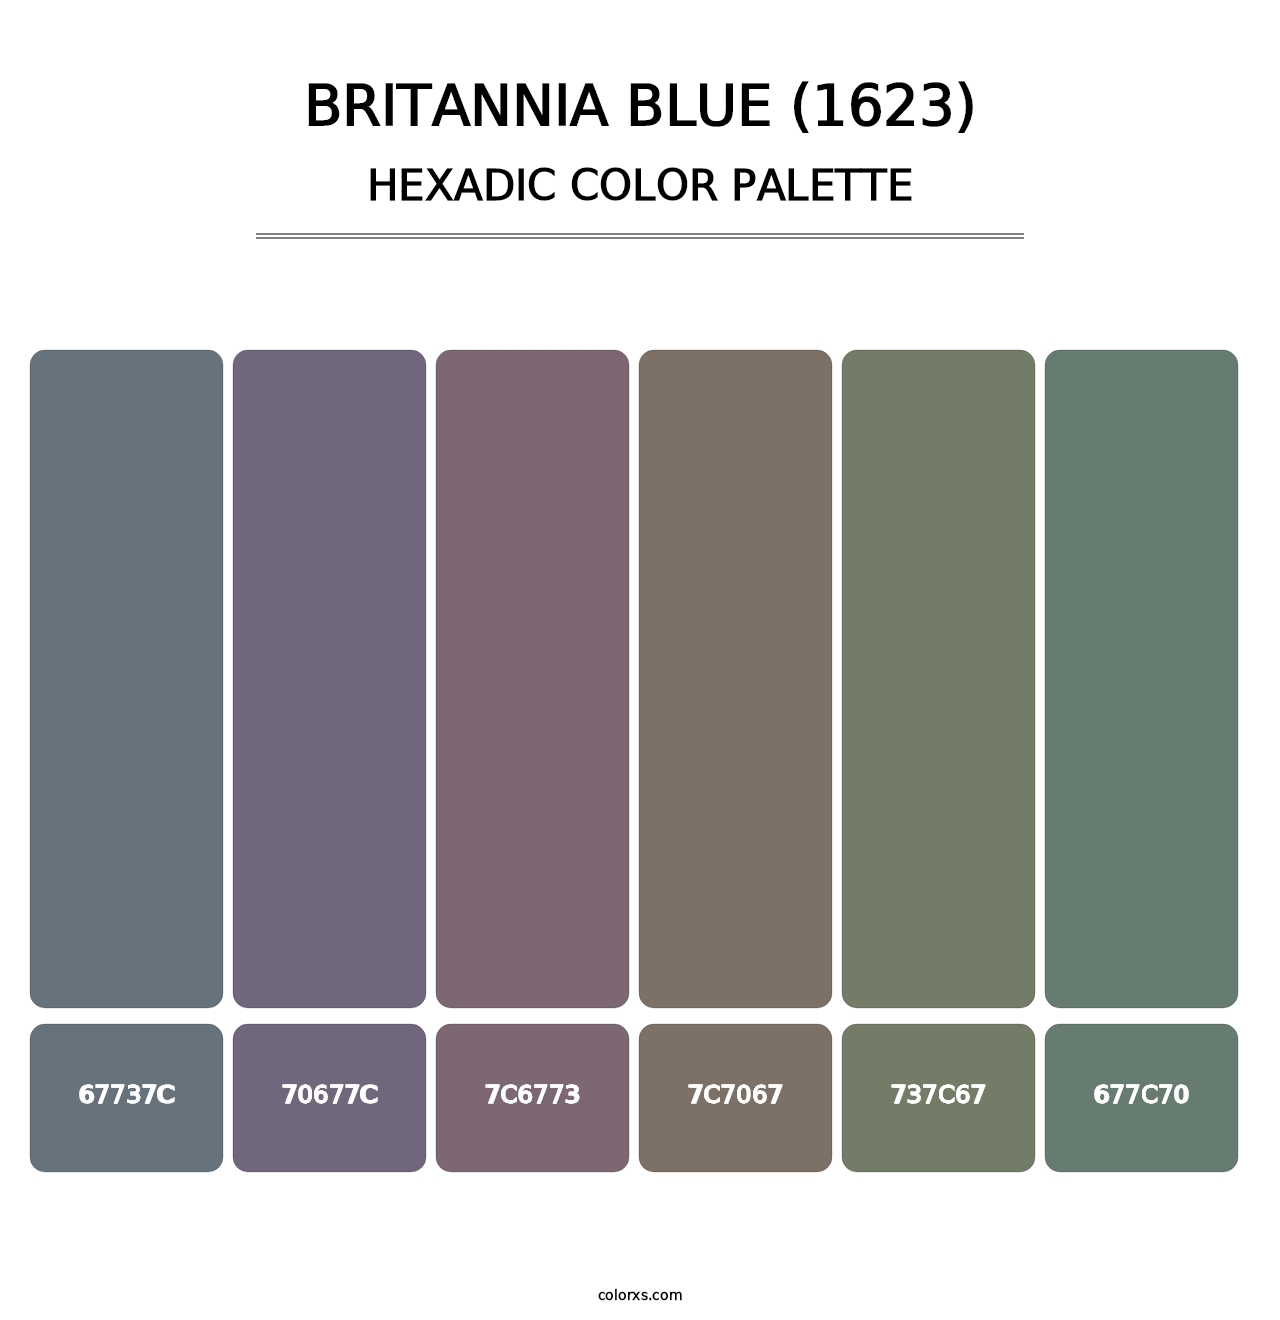 Britannia Blue (1623) - Hexadic Color Palette